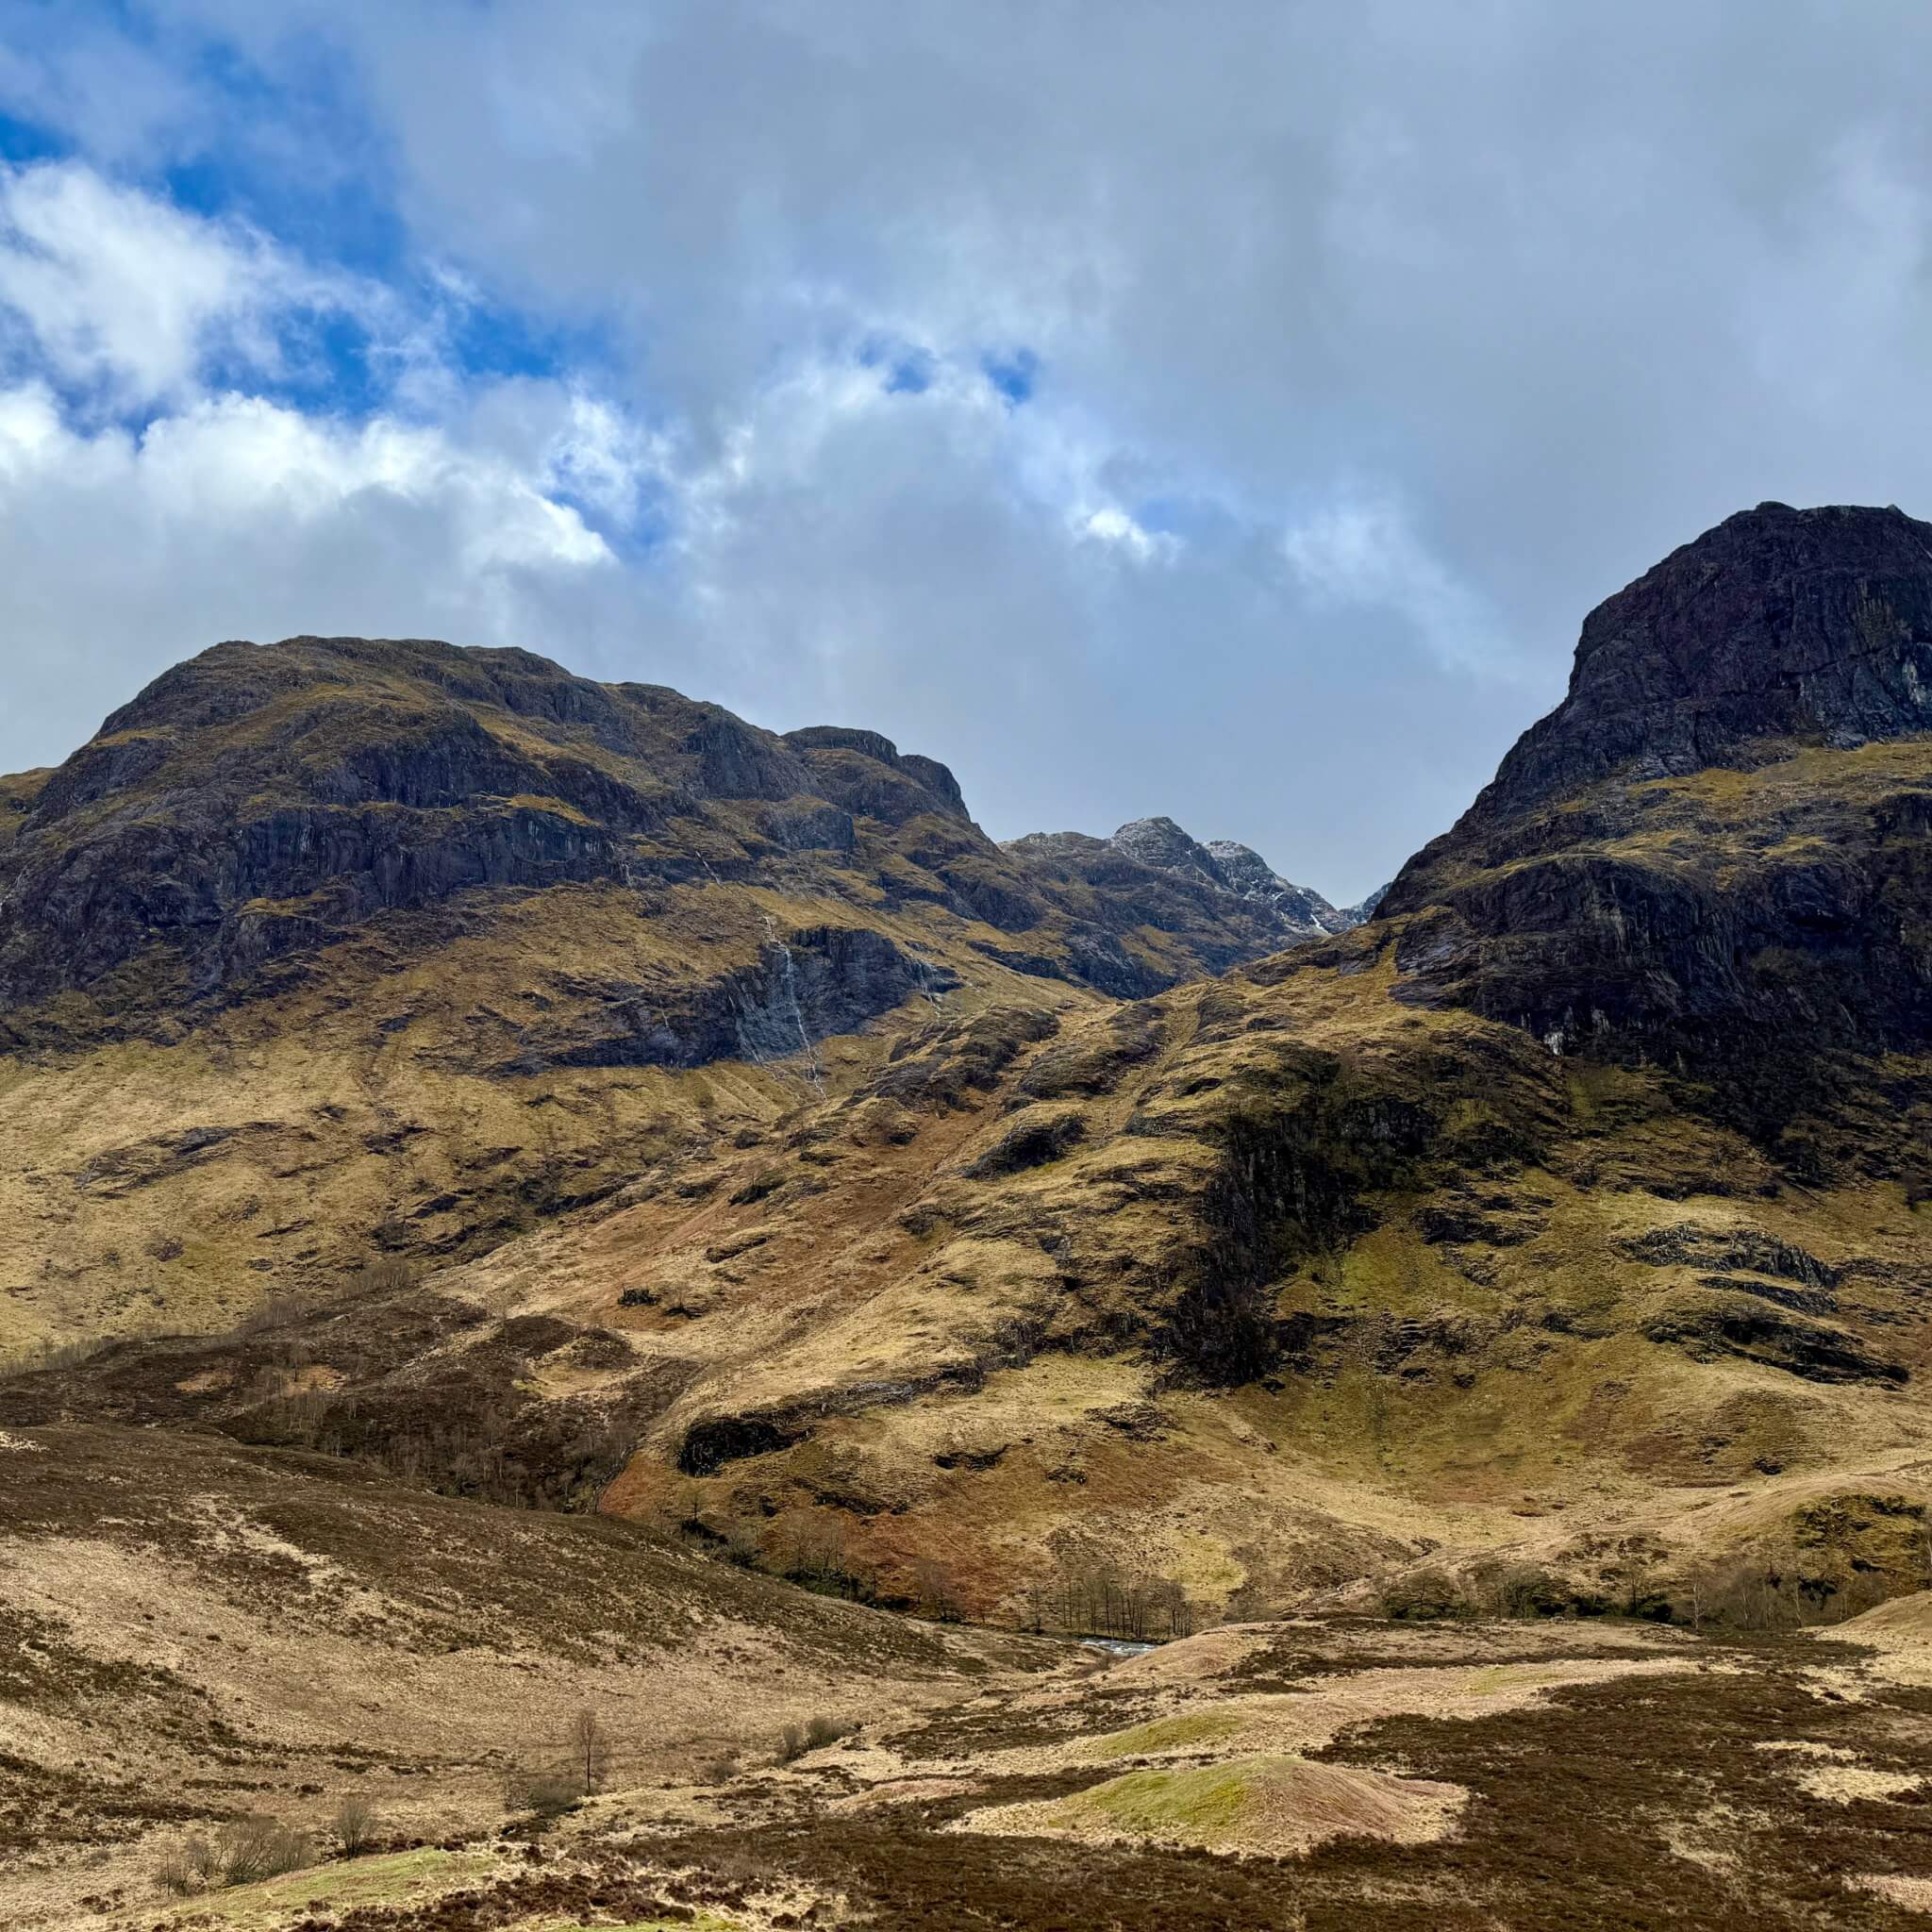 Tipps für eine Reise in die schottischen Highlands Reise Urlaub Schottland Travel 